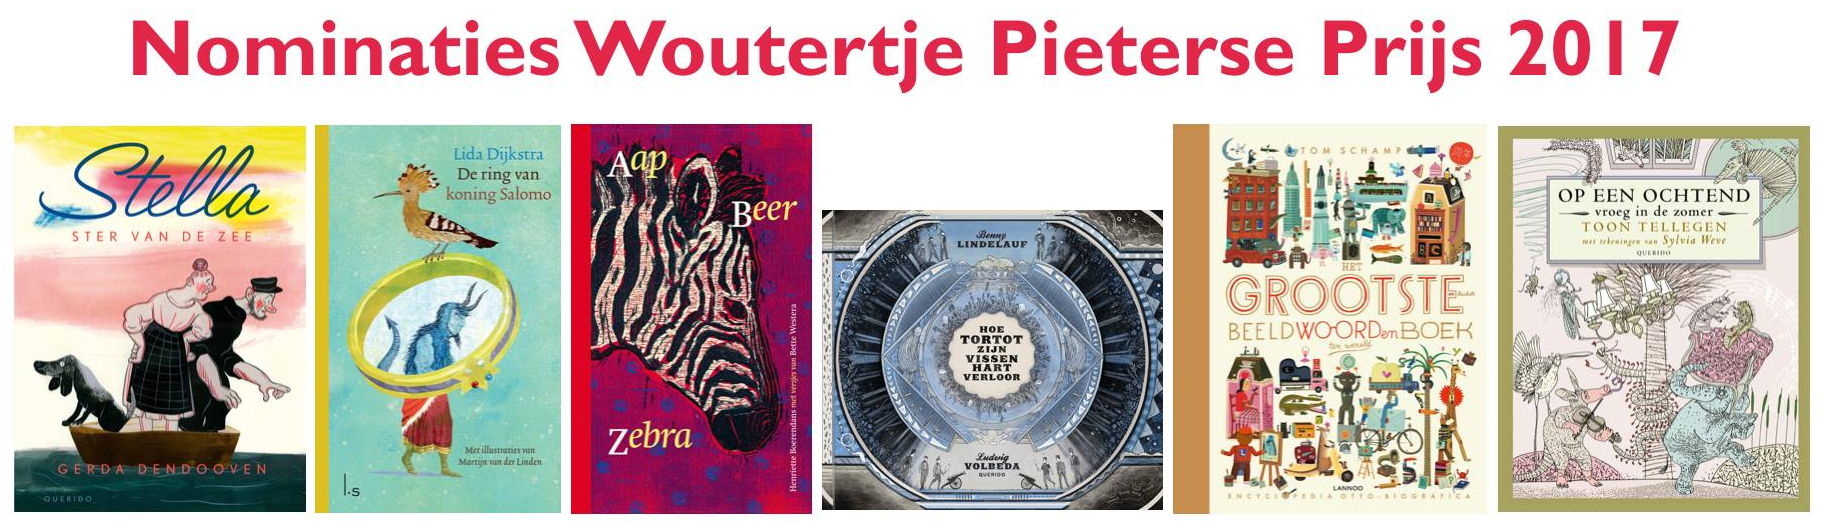 Nominaties Woutertje Pieterse Prijs 2017